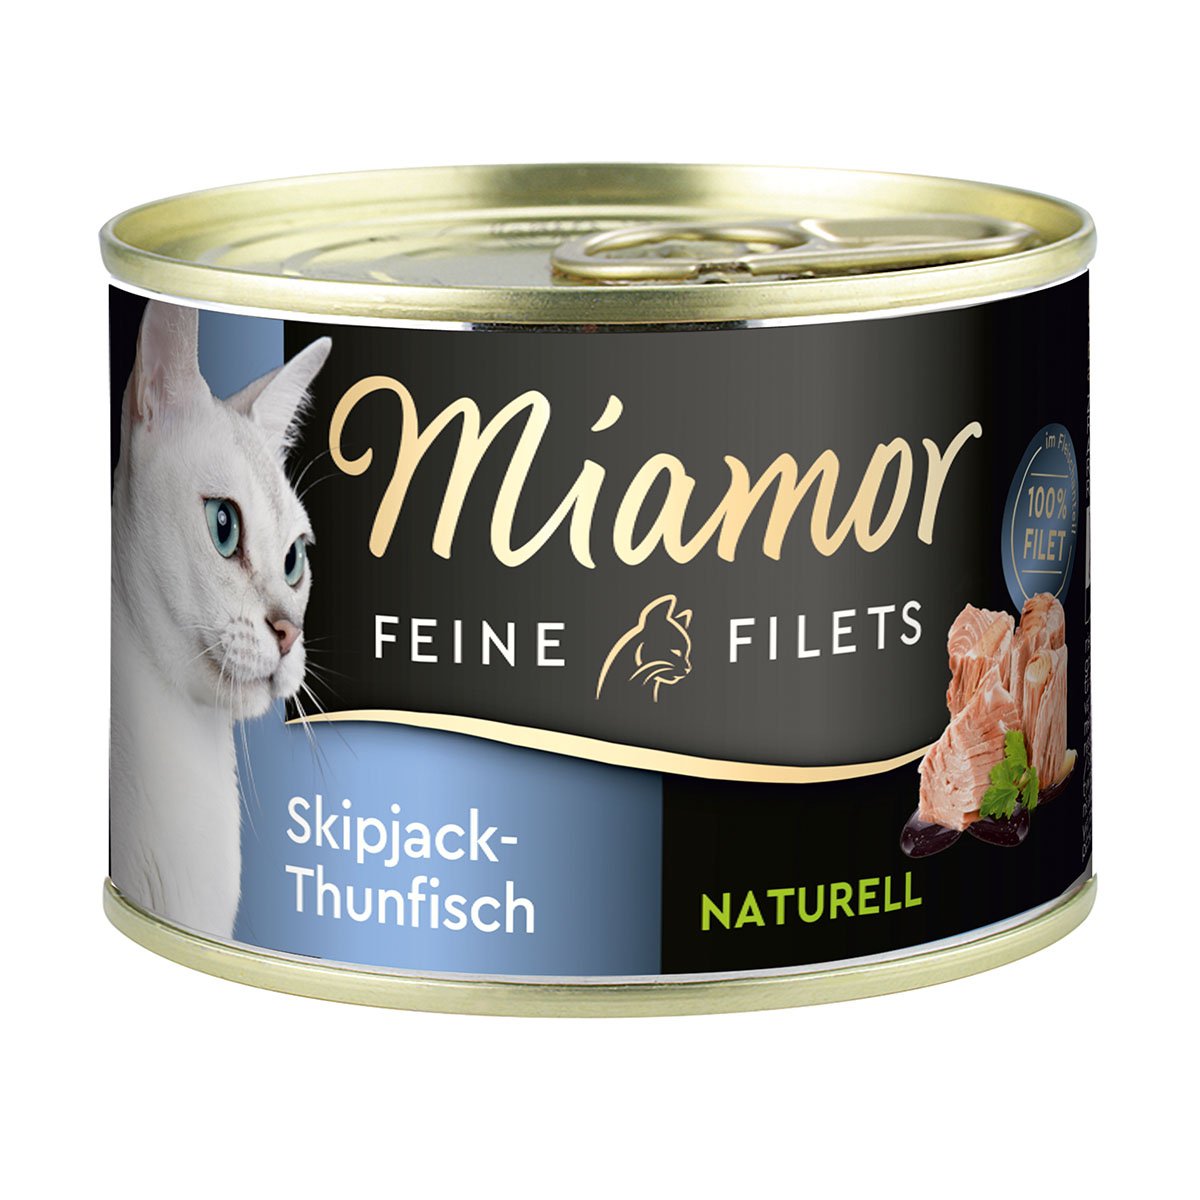 Miamor Feine Filets Naturelle Skipjack-Thunfisch 156g Dose 24x156g von Miamor